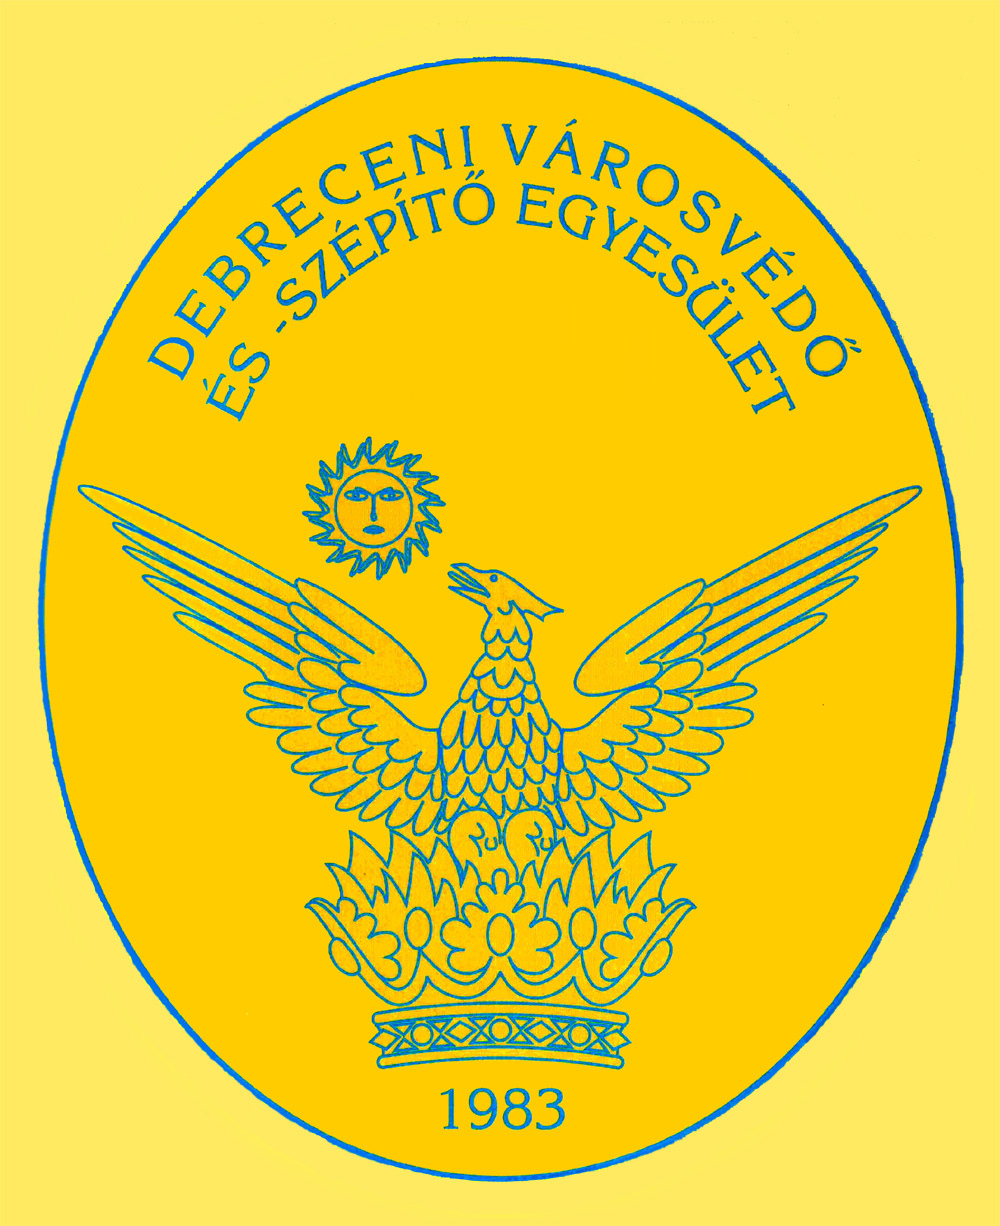 Debreceni Várovédő- és szépítő Egyesület